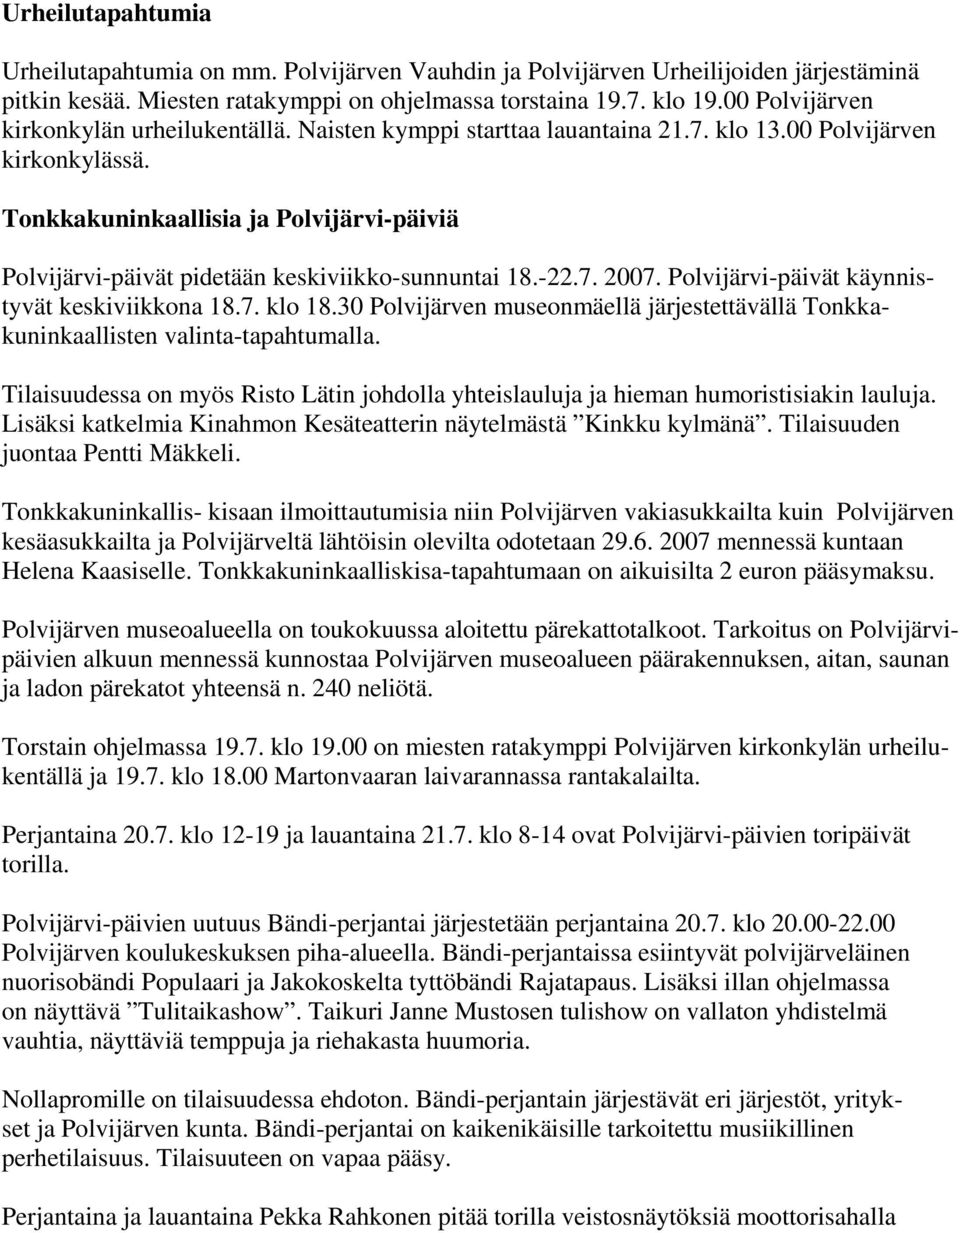 Tonkkakuninkaallisia ja Polvijärvi-päiviä Polvijärvi-päivät pidetään keskiviikko-sunnuntai 18.-22.7. 2007. Polvijärvi-päivät käynnistyvät keskiviikkona 18.7. klo 18.